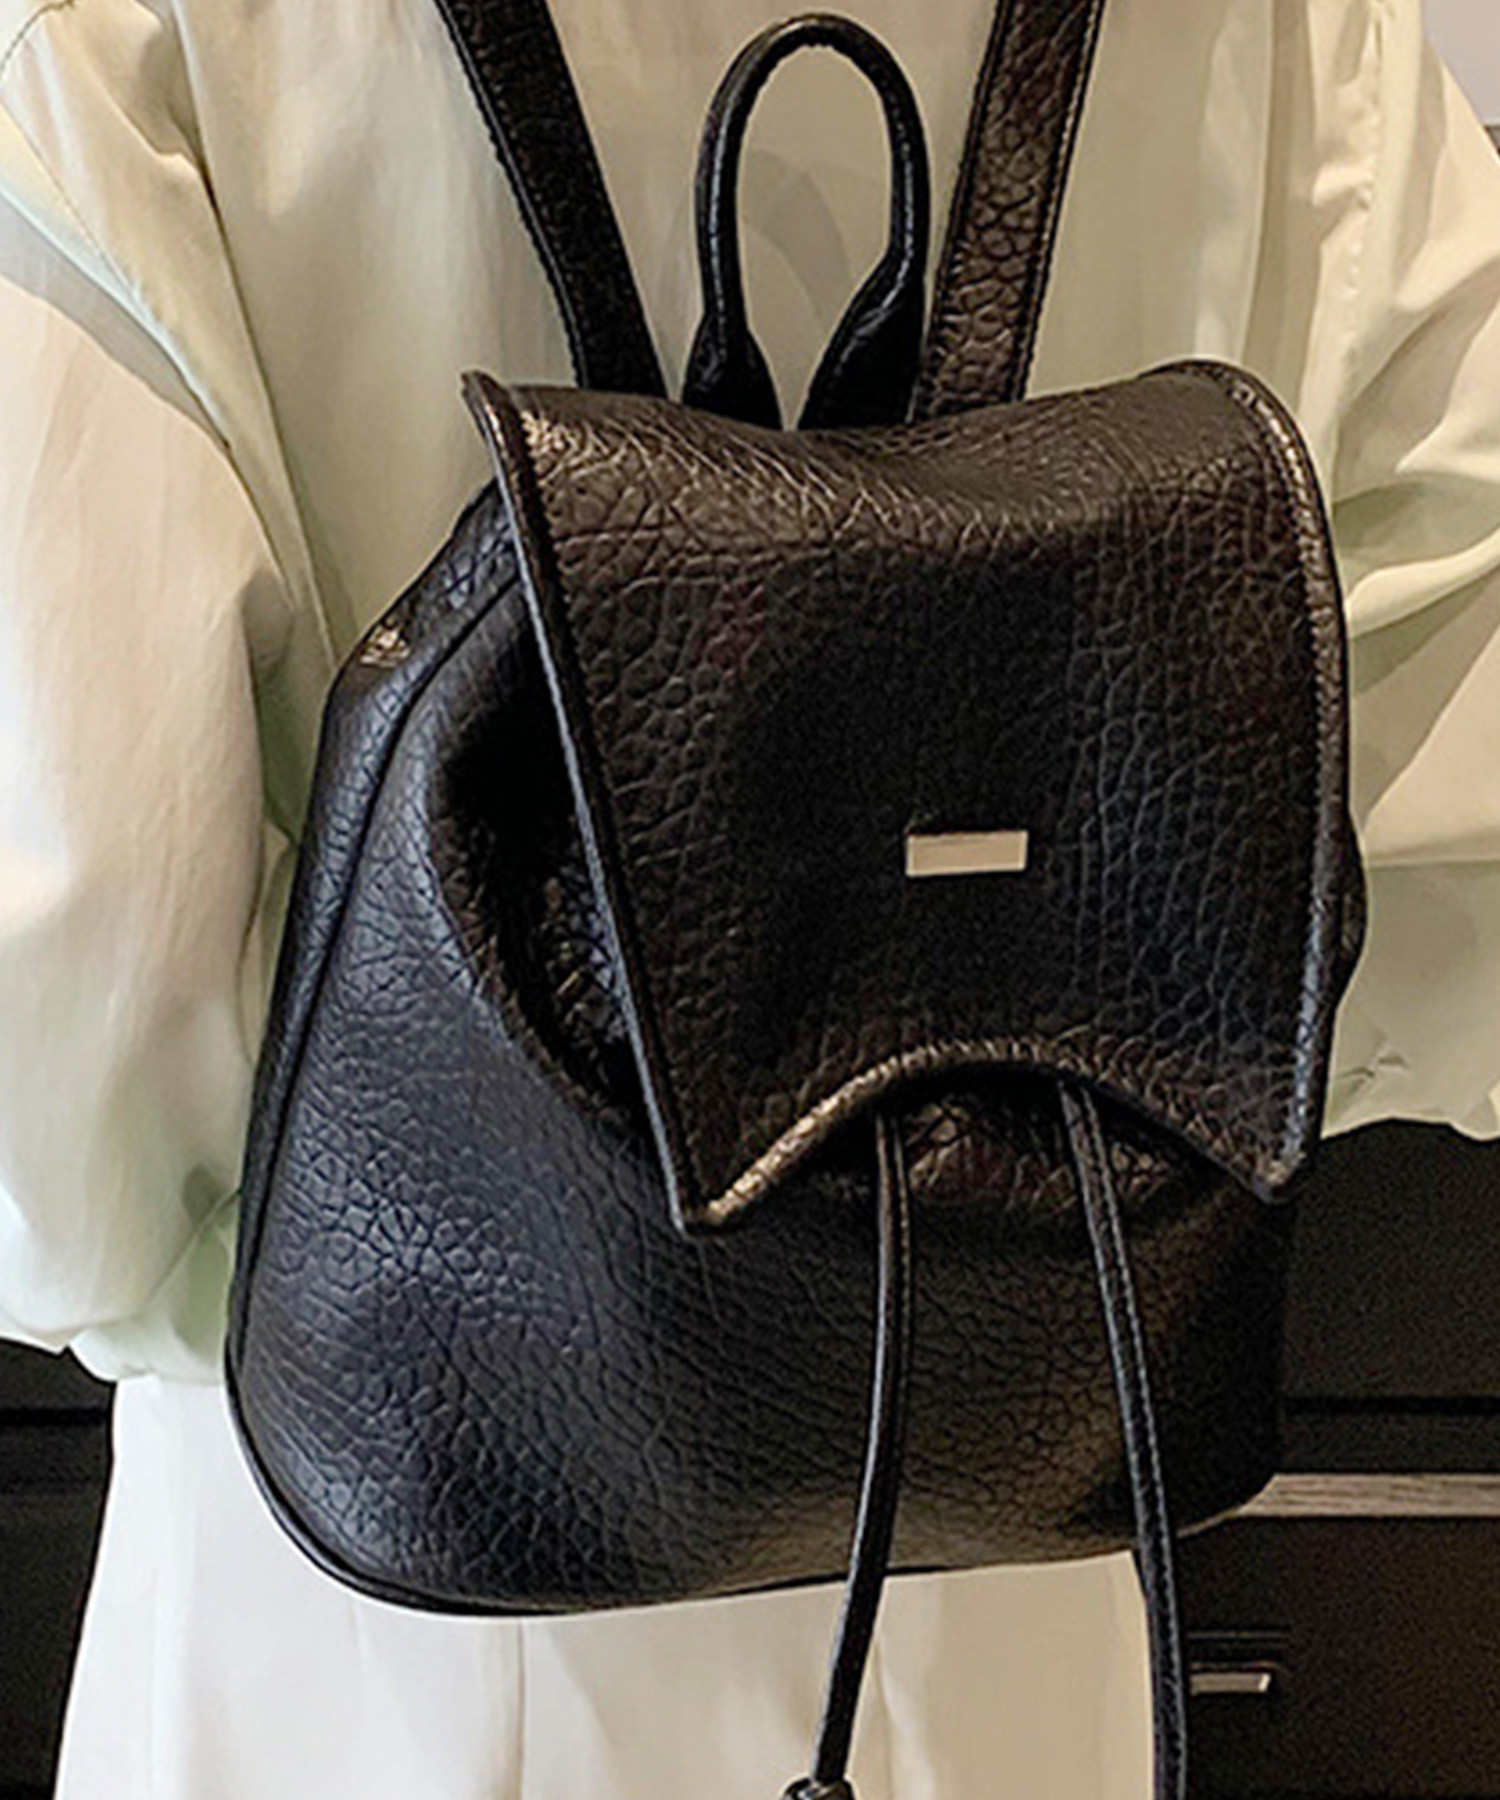 フェイクレザーリュック レディース 10代 20代 30代 韓国ファッション カジュアル おしゃれ バッグ バック 鞄 大容量 リュックサック 黒 白